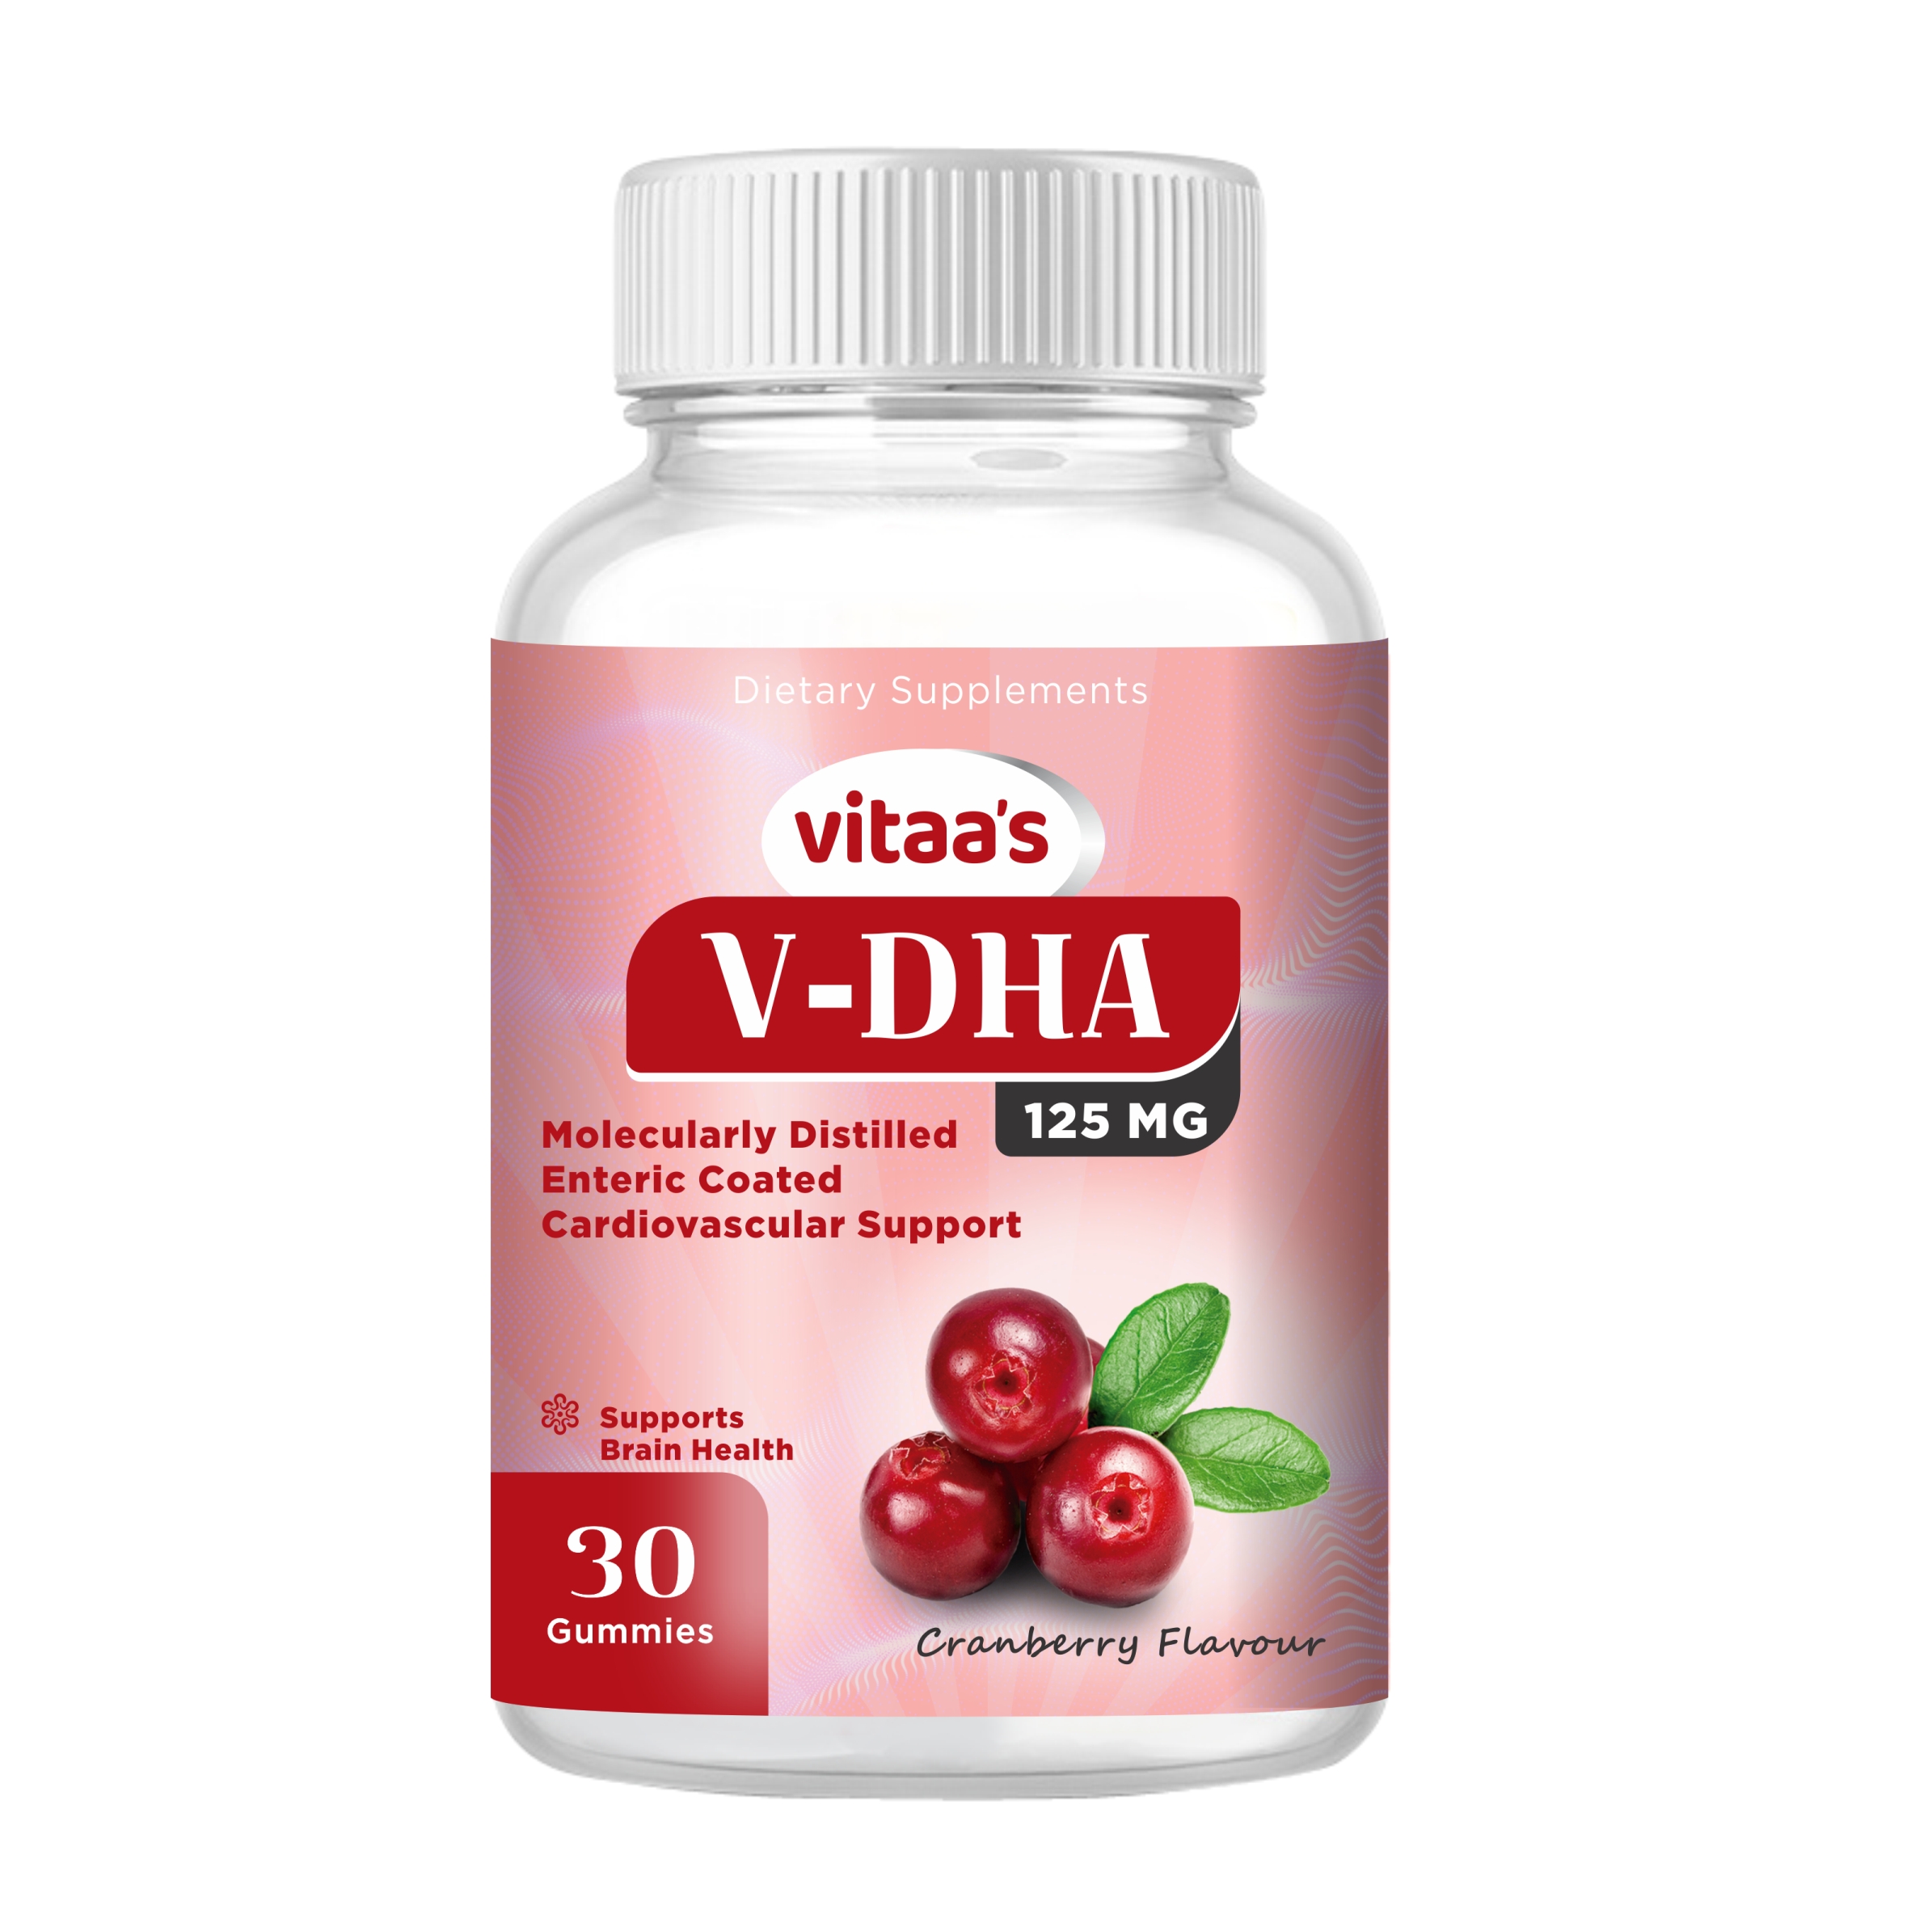 Vitaa's V-DHA Gummies For Brian Health